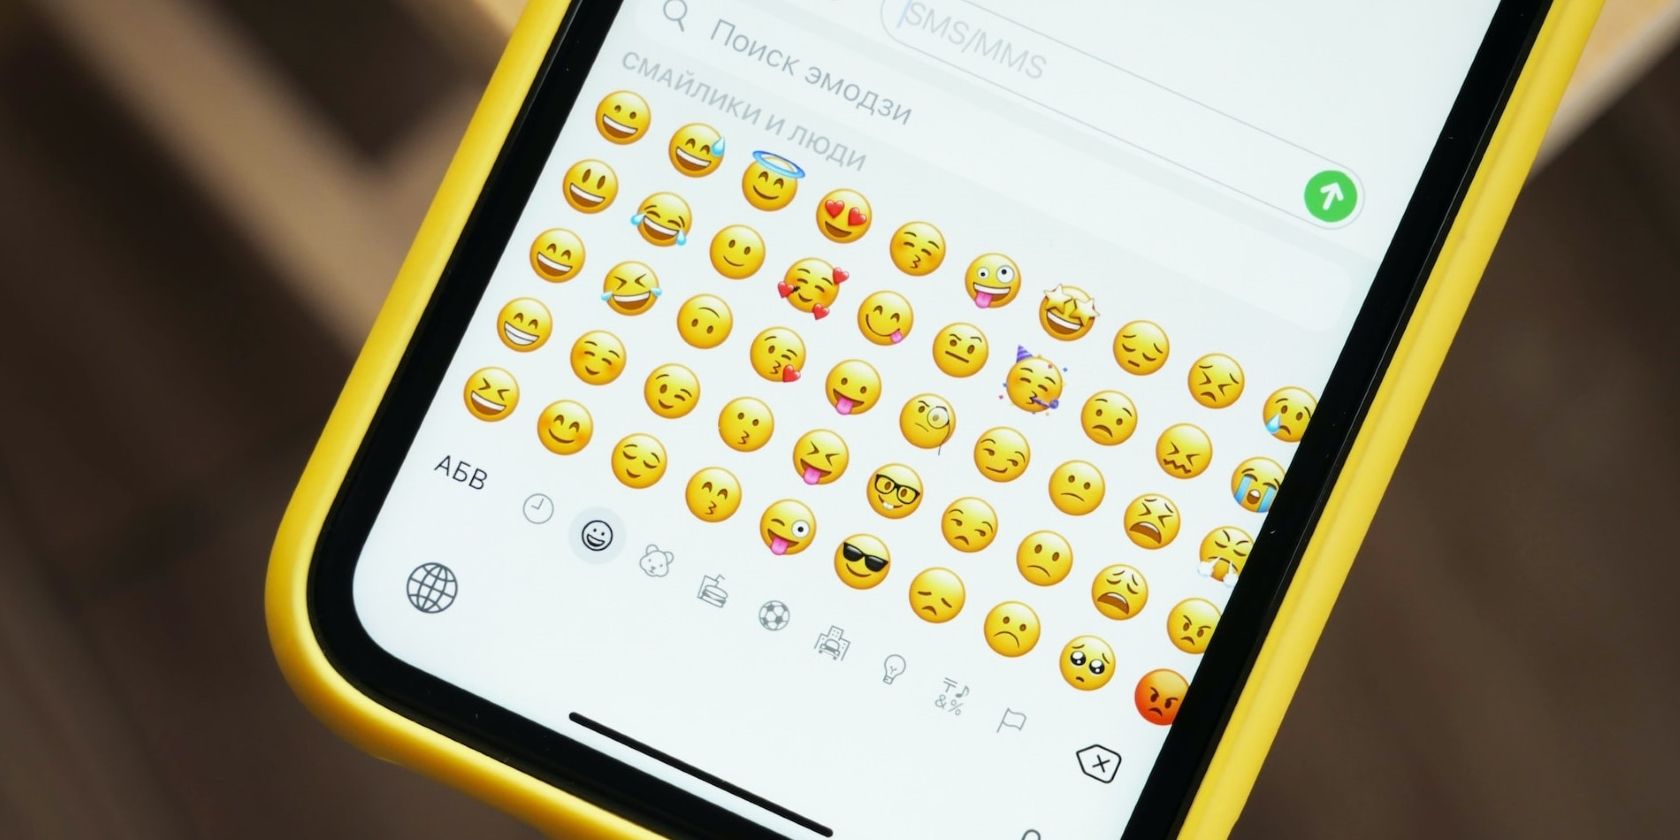 emojis on mobile phone keyboard